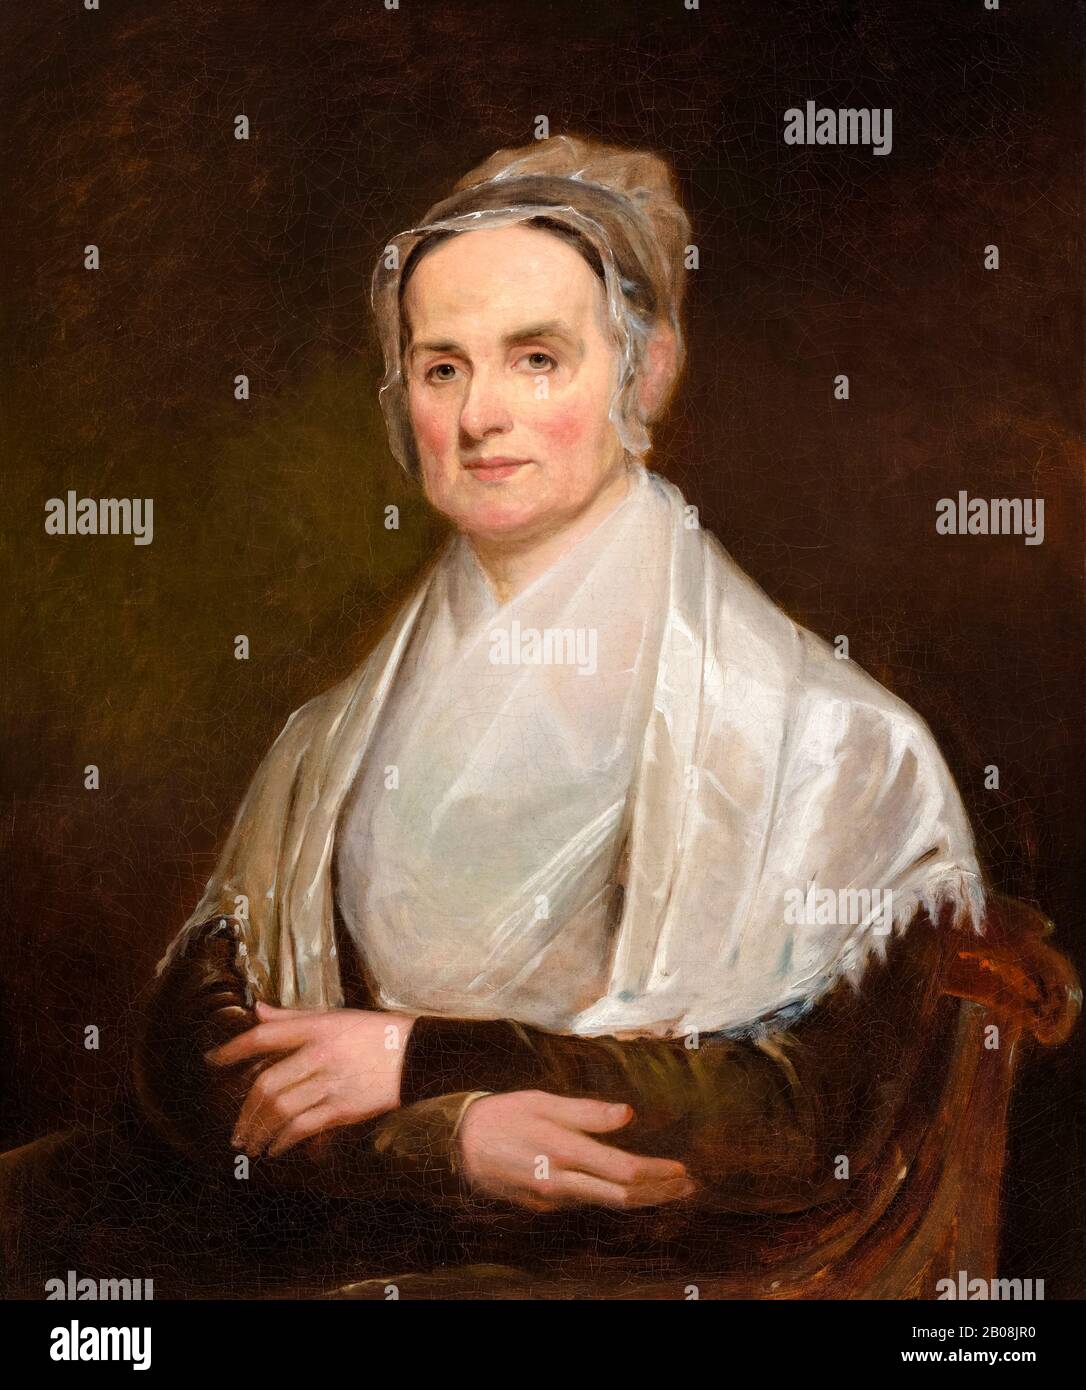 Lucretia Coffin Mott (1793-1880), Abolitionist, Women's civil rights campaigner, portrait painting by Joseph Kyle, 1842 Stock Photo